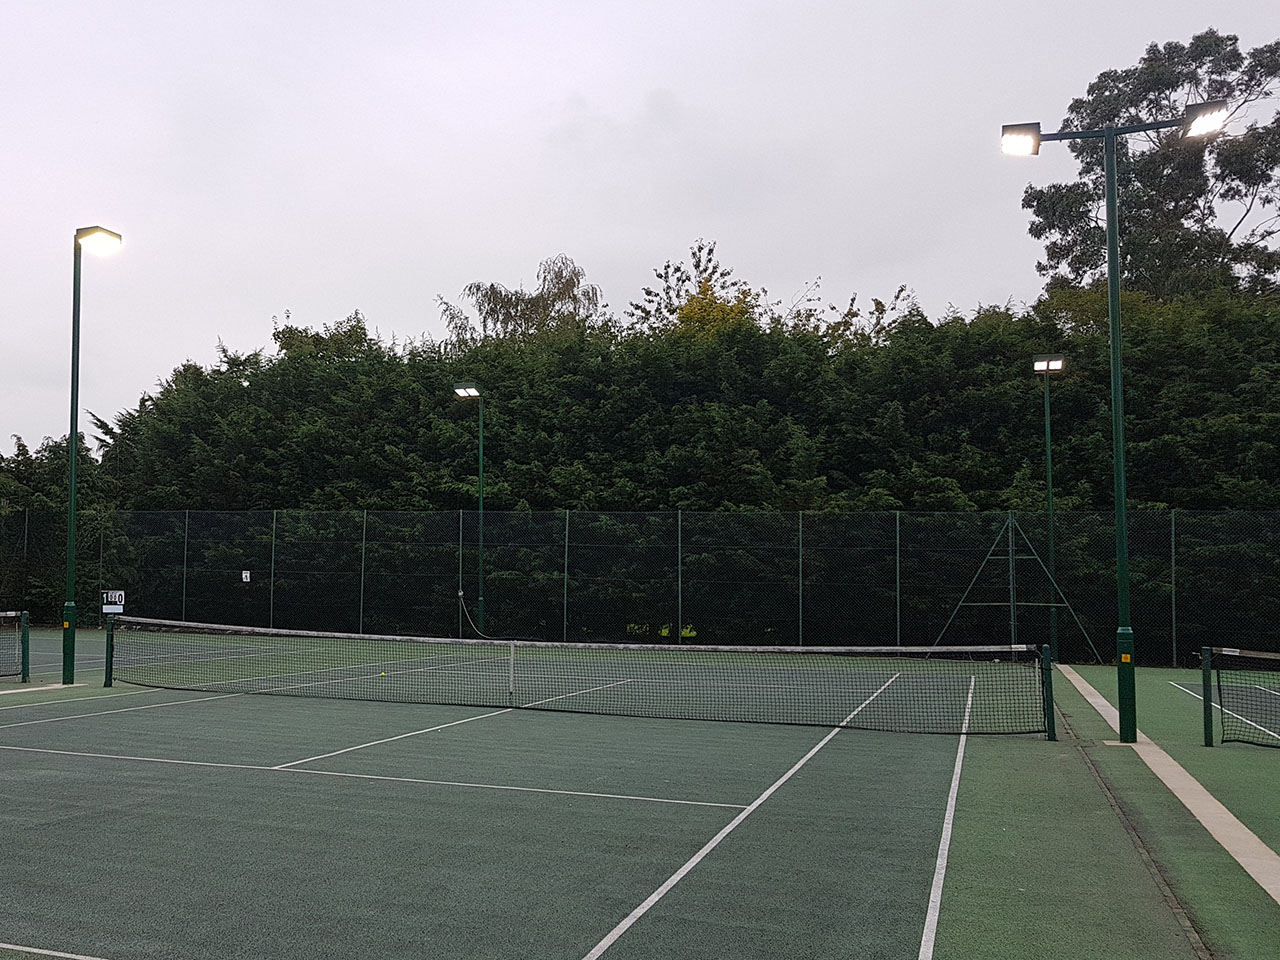 Gosfield Lawn Tennis Club